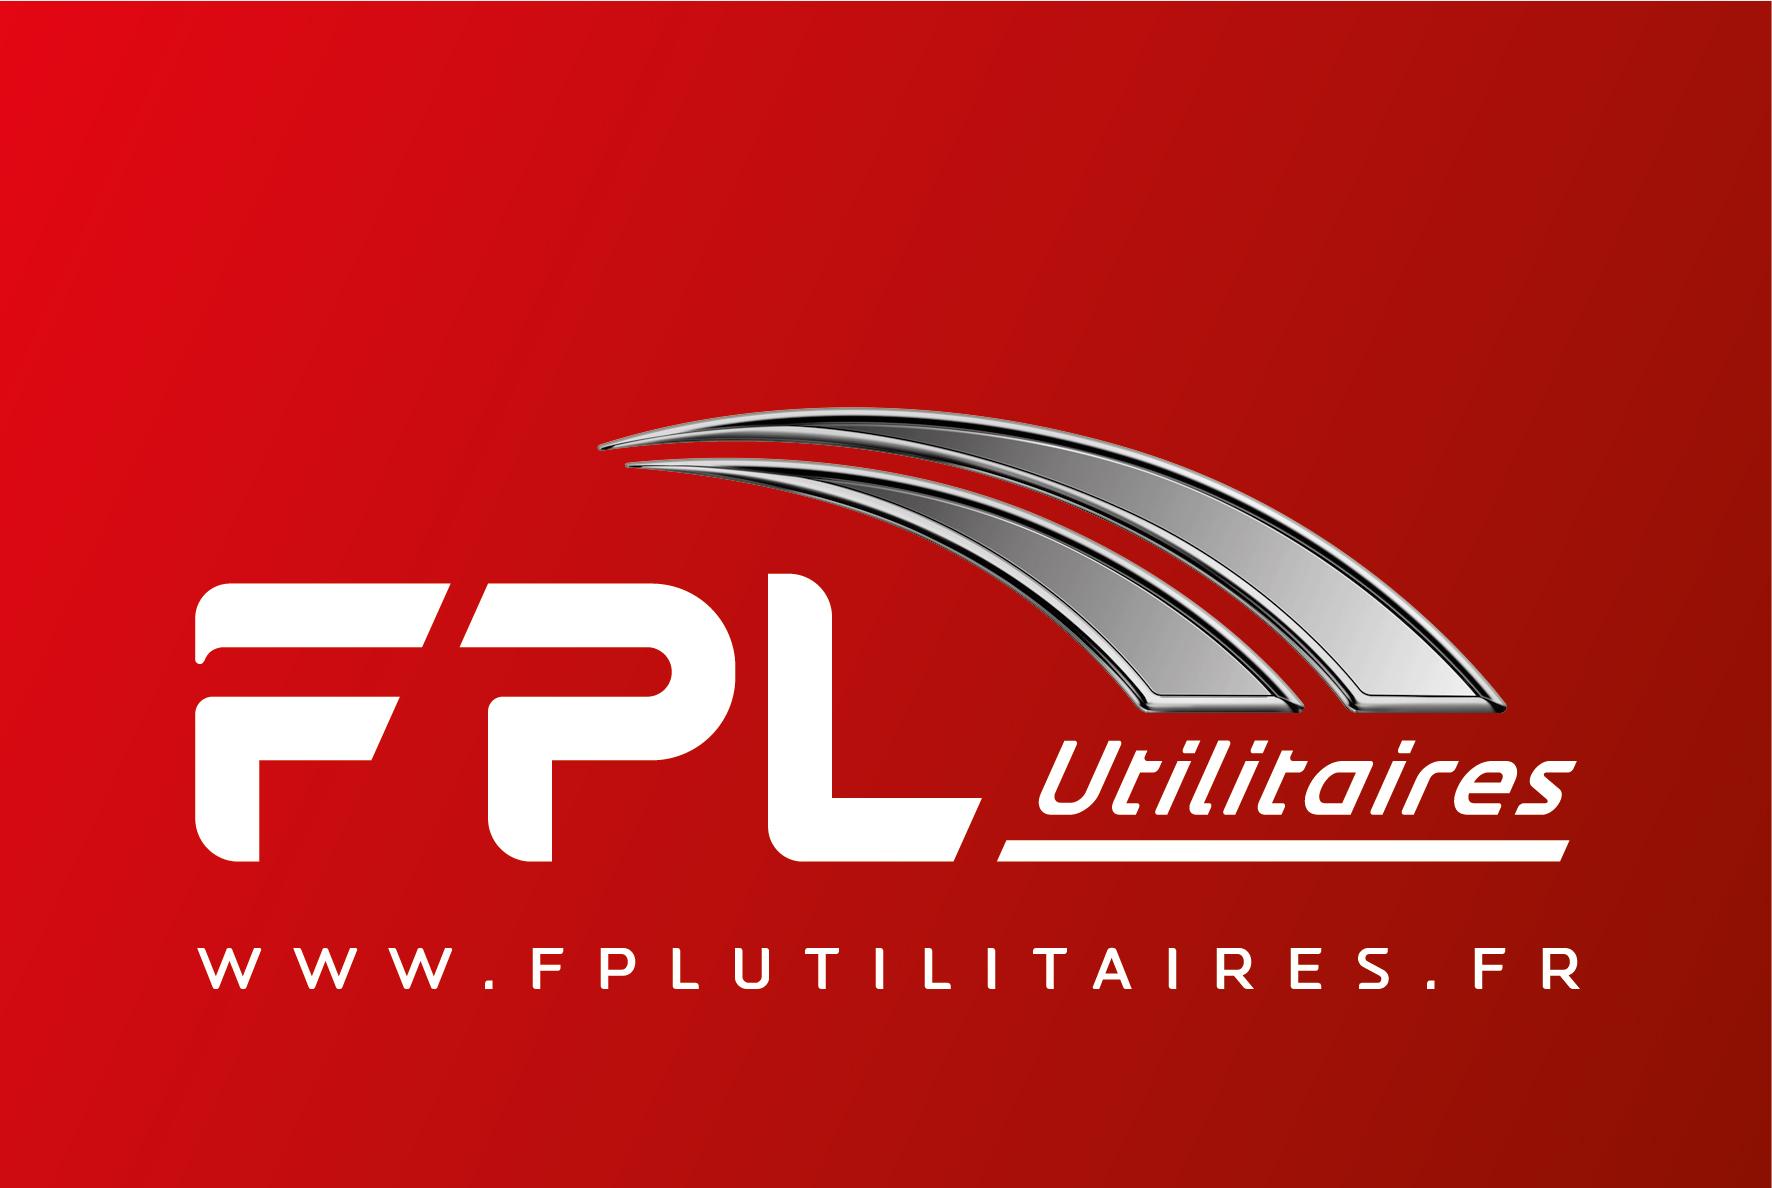 Logofpl utilitaire rouge site web